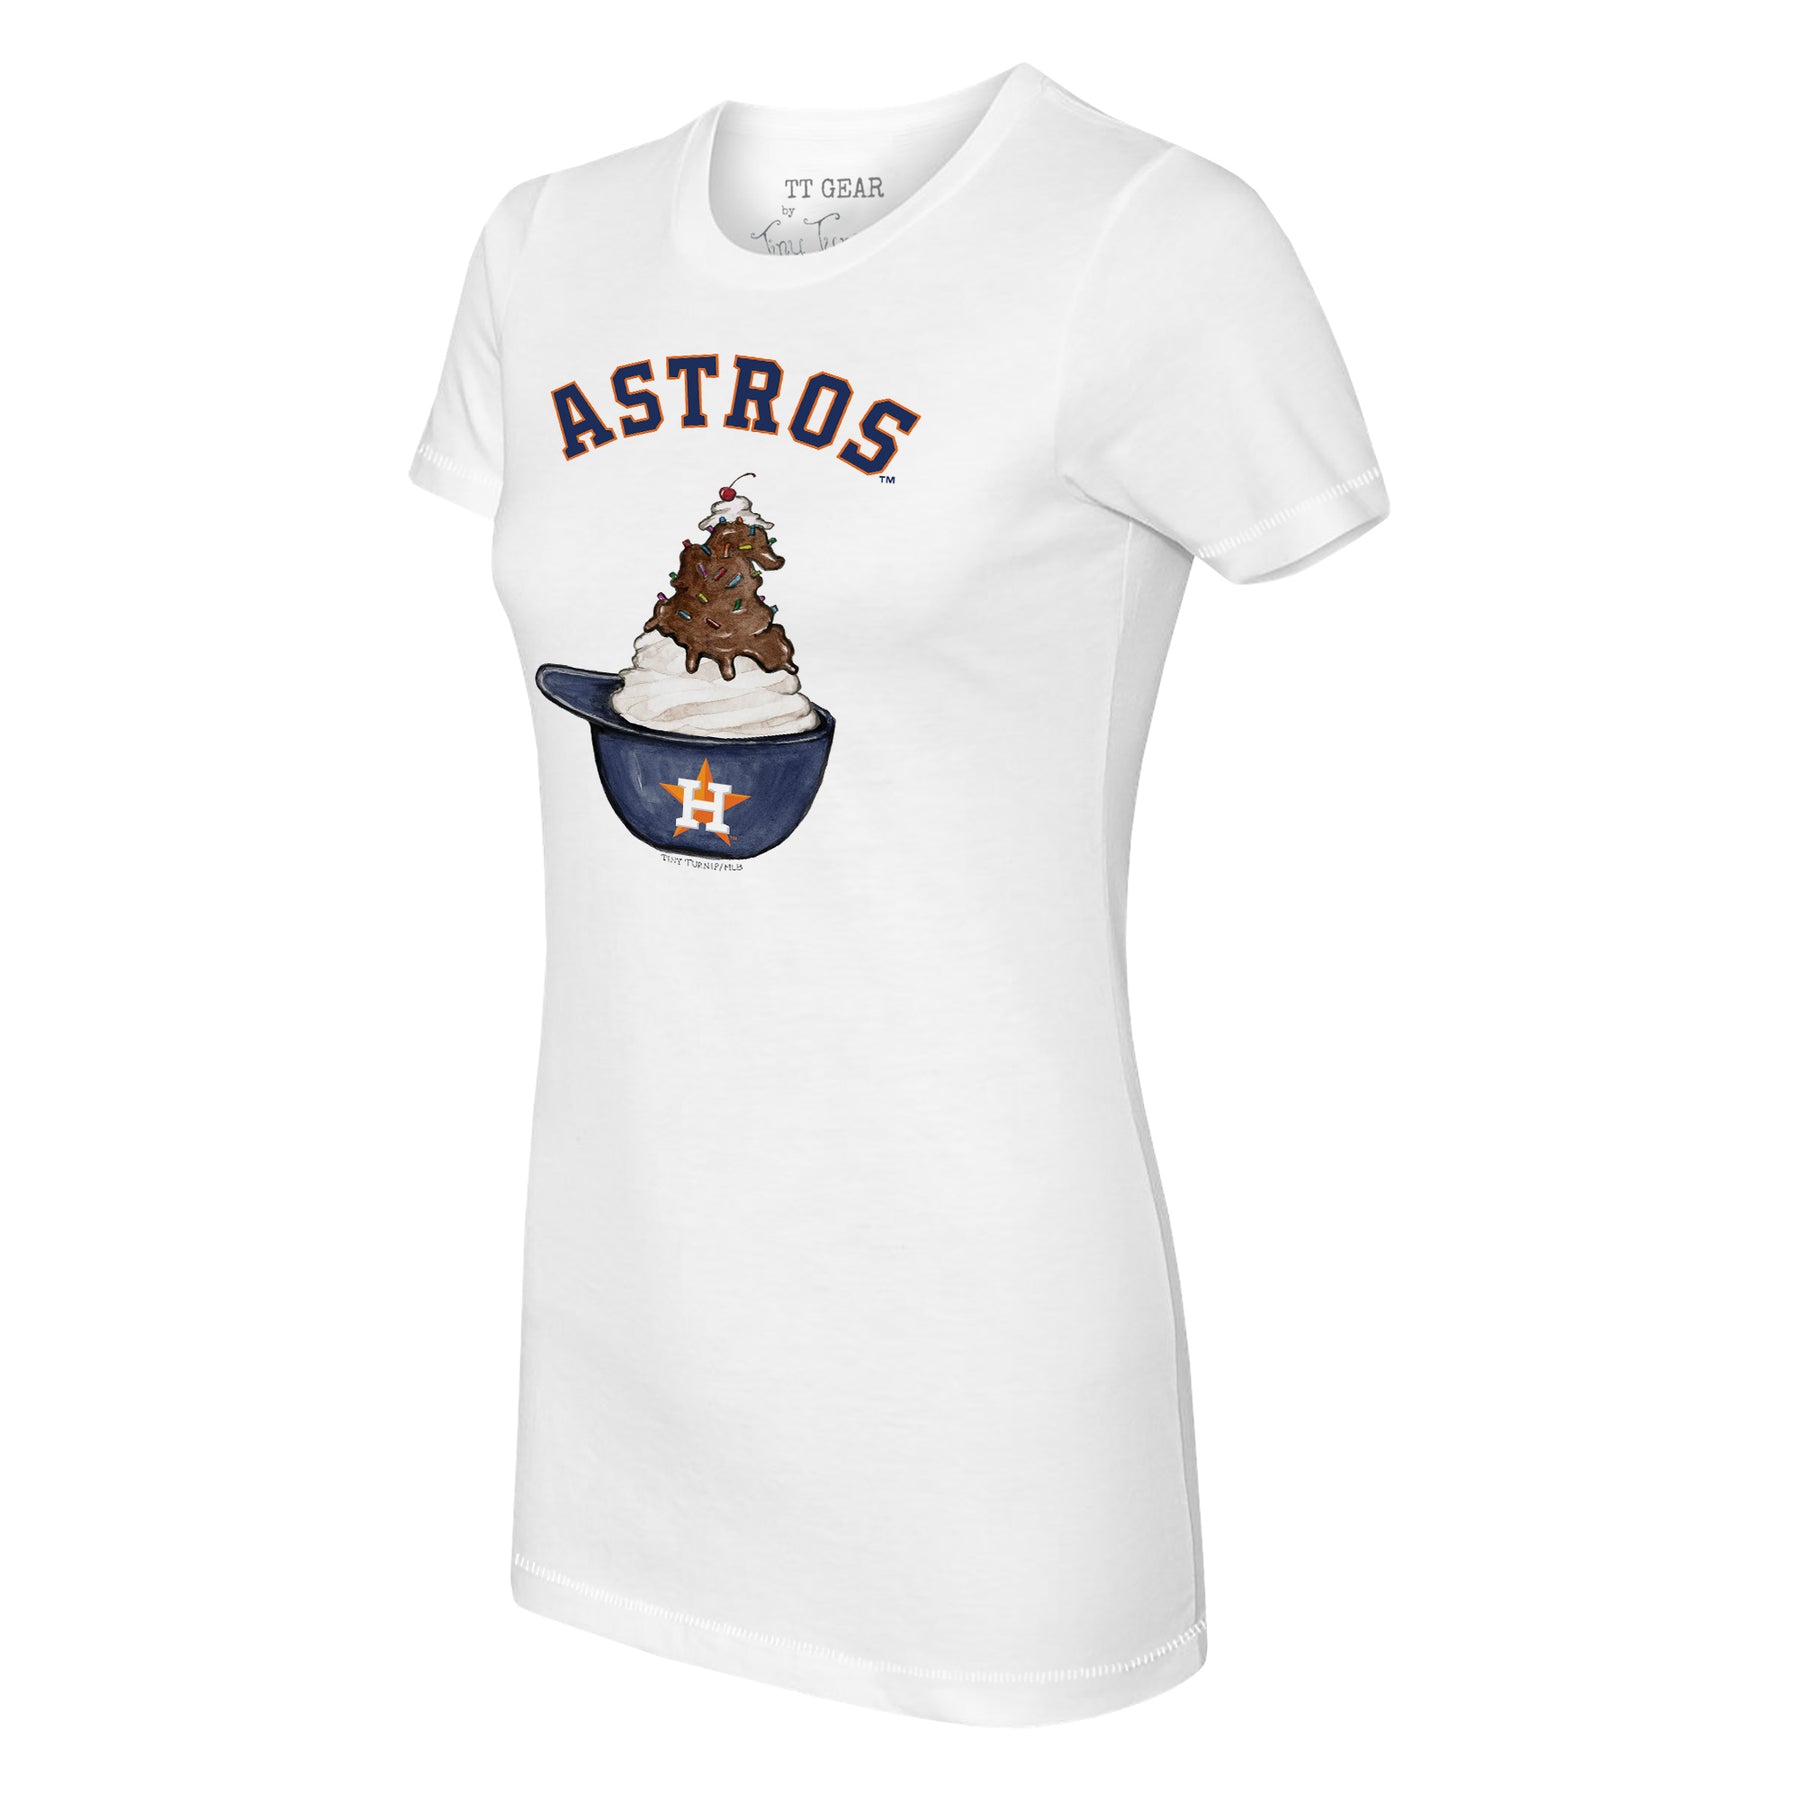 Toddler Tiny Turnip White Houston Astros Baseball Bow T-Shirt Size:3T